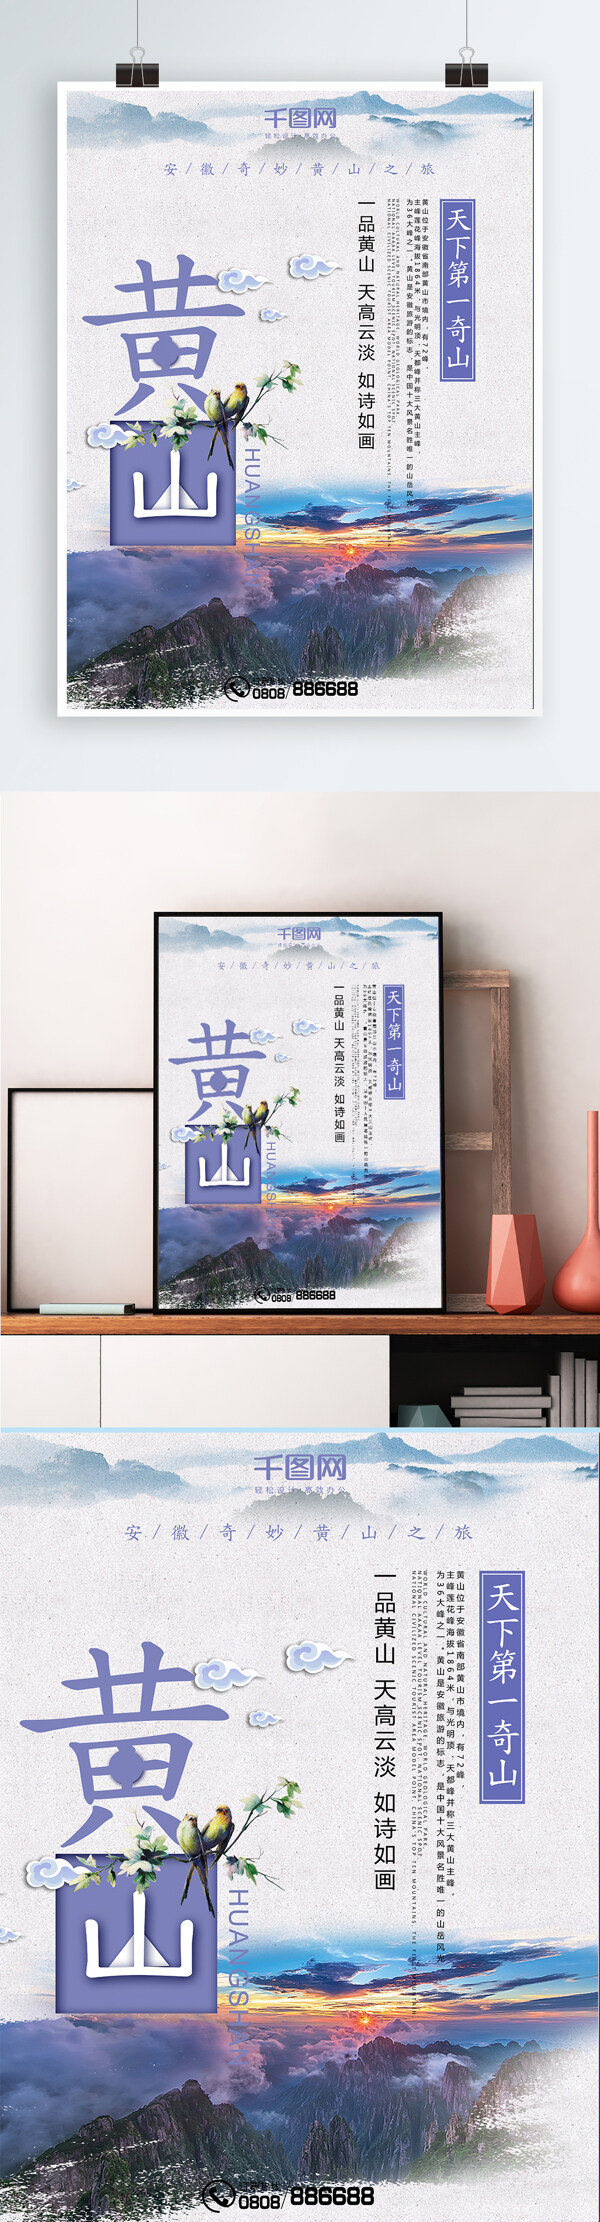 中国风黄山风景旅游海报设计